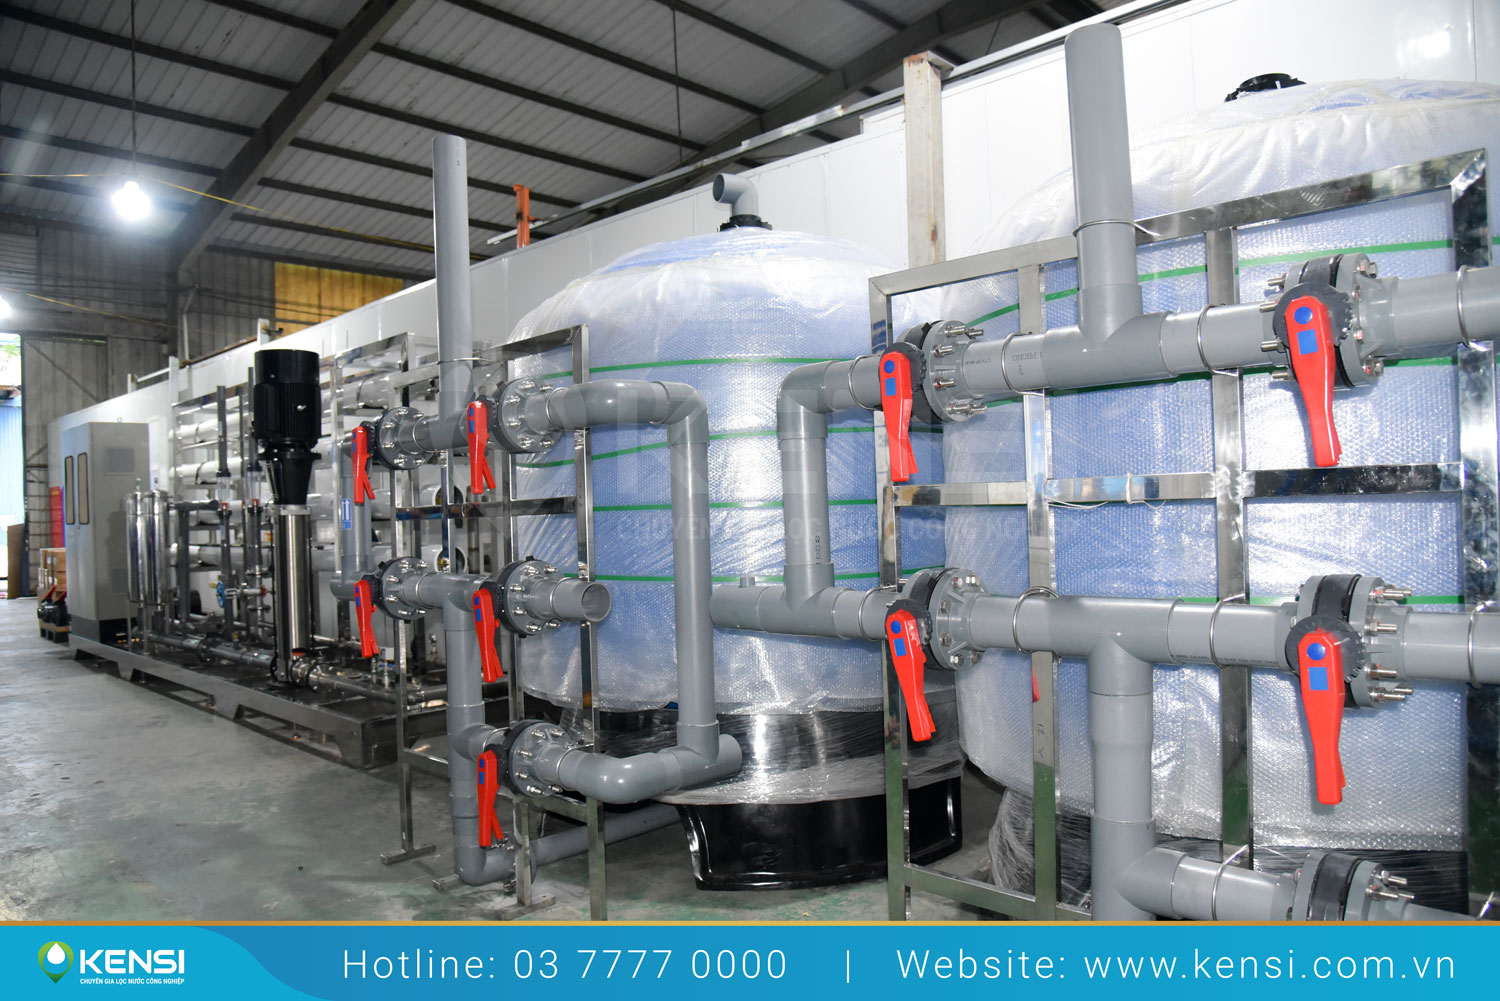 Lắp đặt hệ thống lọc nước RO công nghiệp cho nhà máy hóa chất Đức Giang